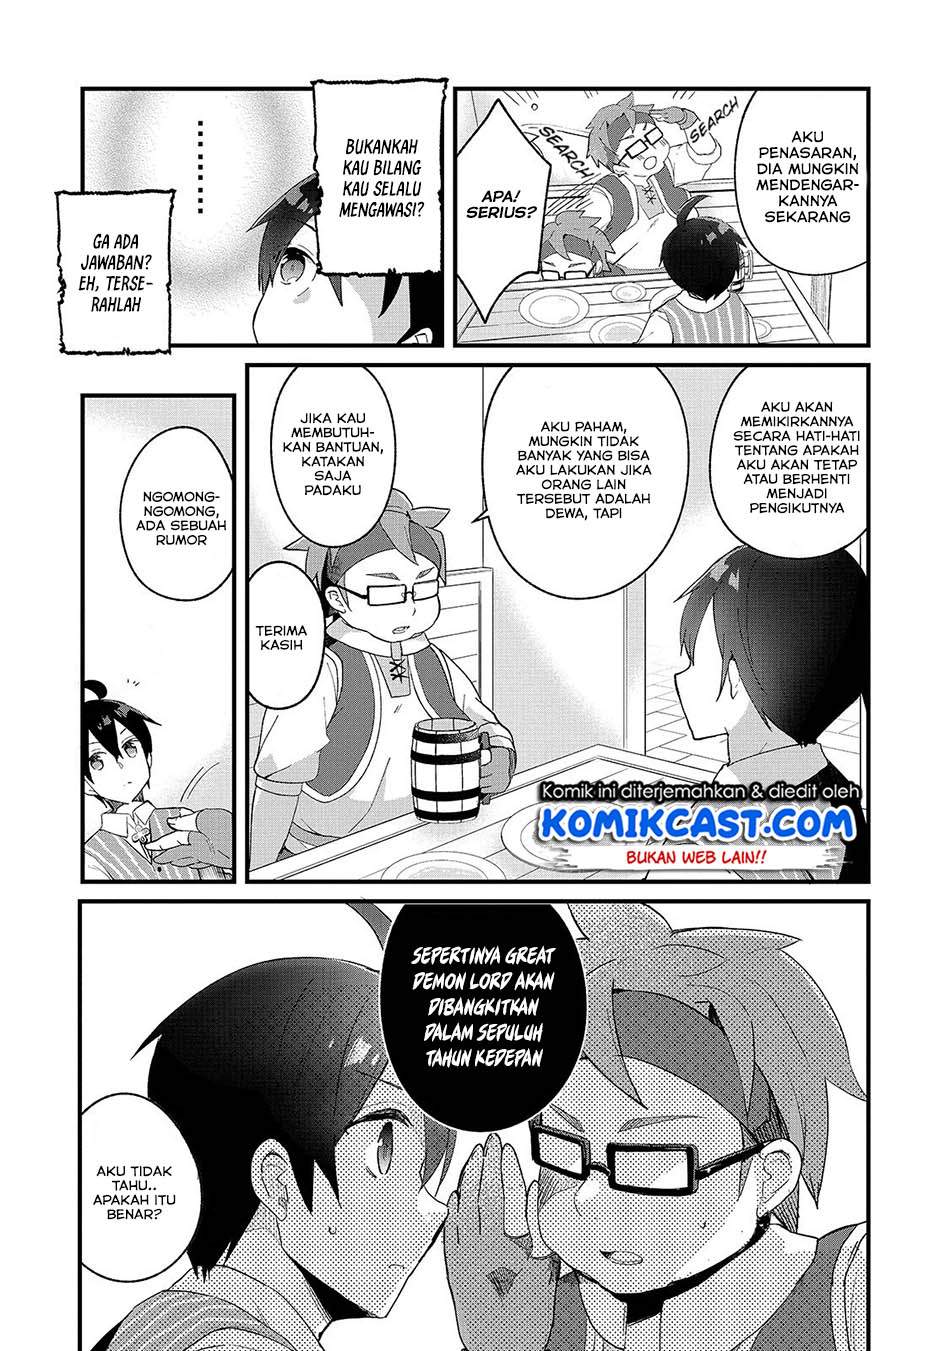 Shinja Zero no Megami-sama to Hajimeru Isekai Kouryaku Chapter 03.2 Bahasa Indonesia